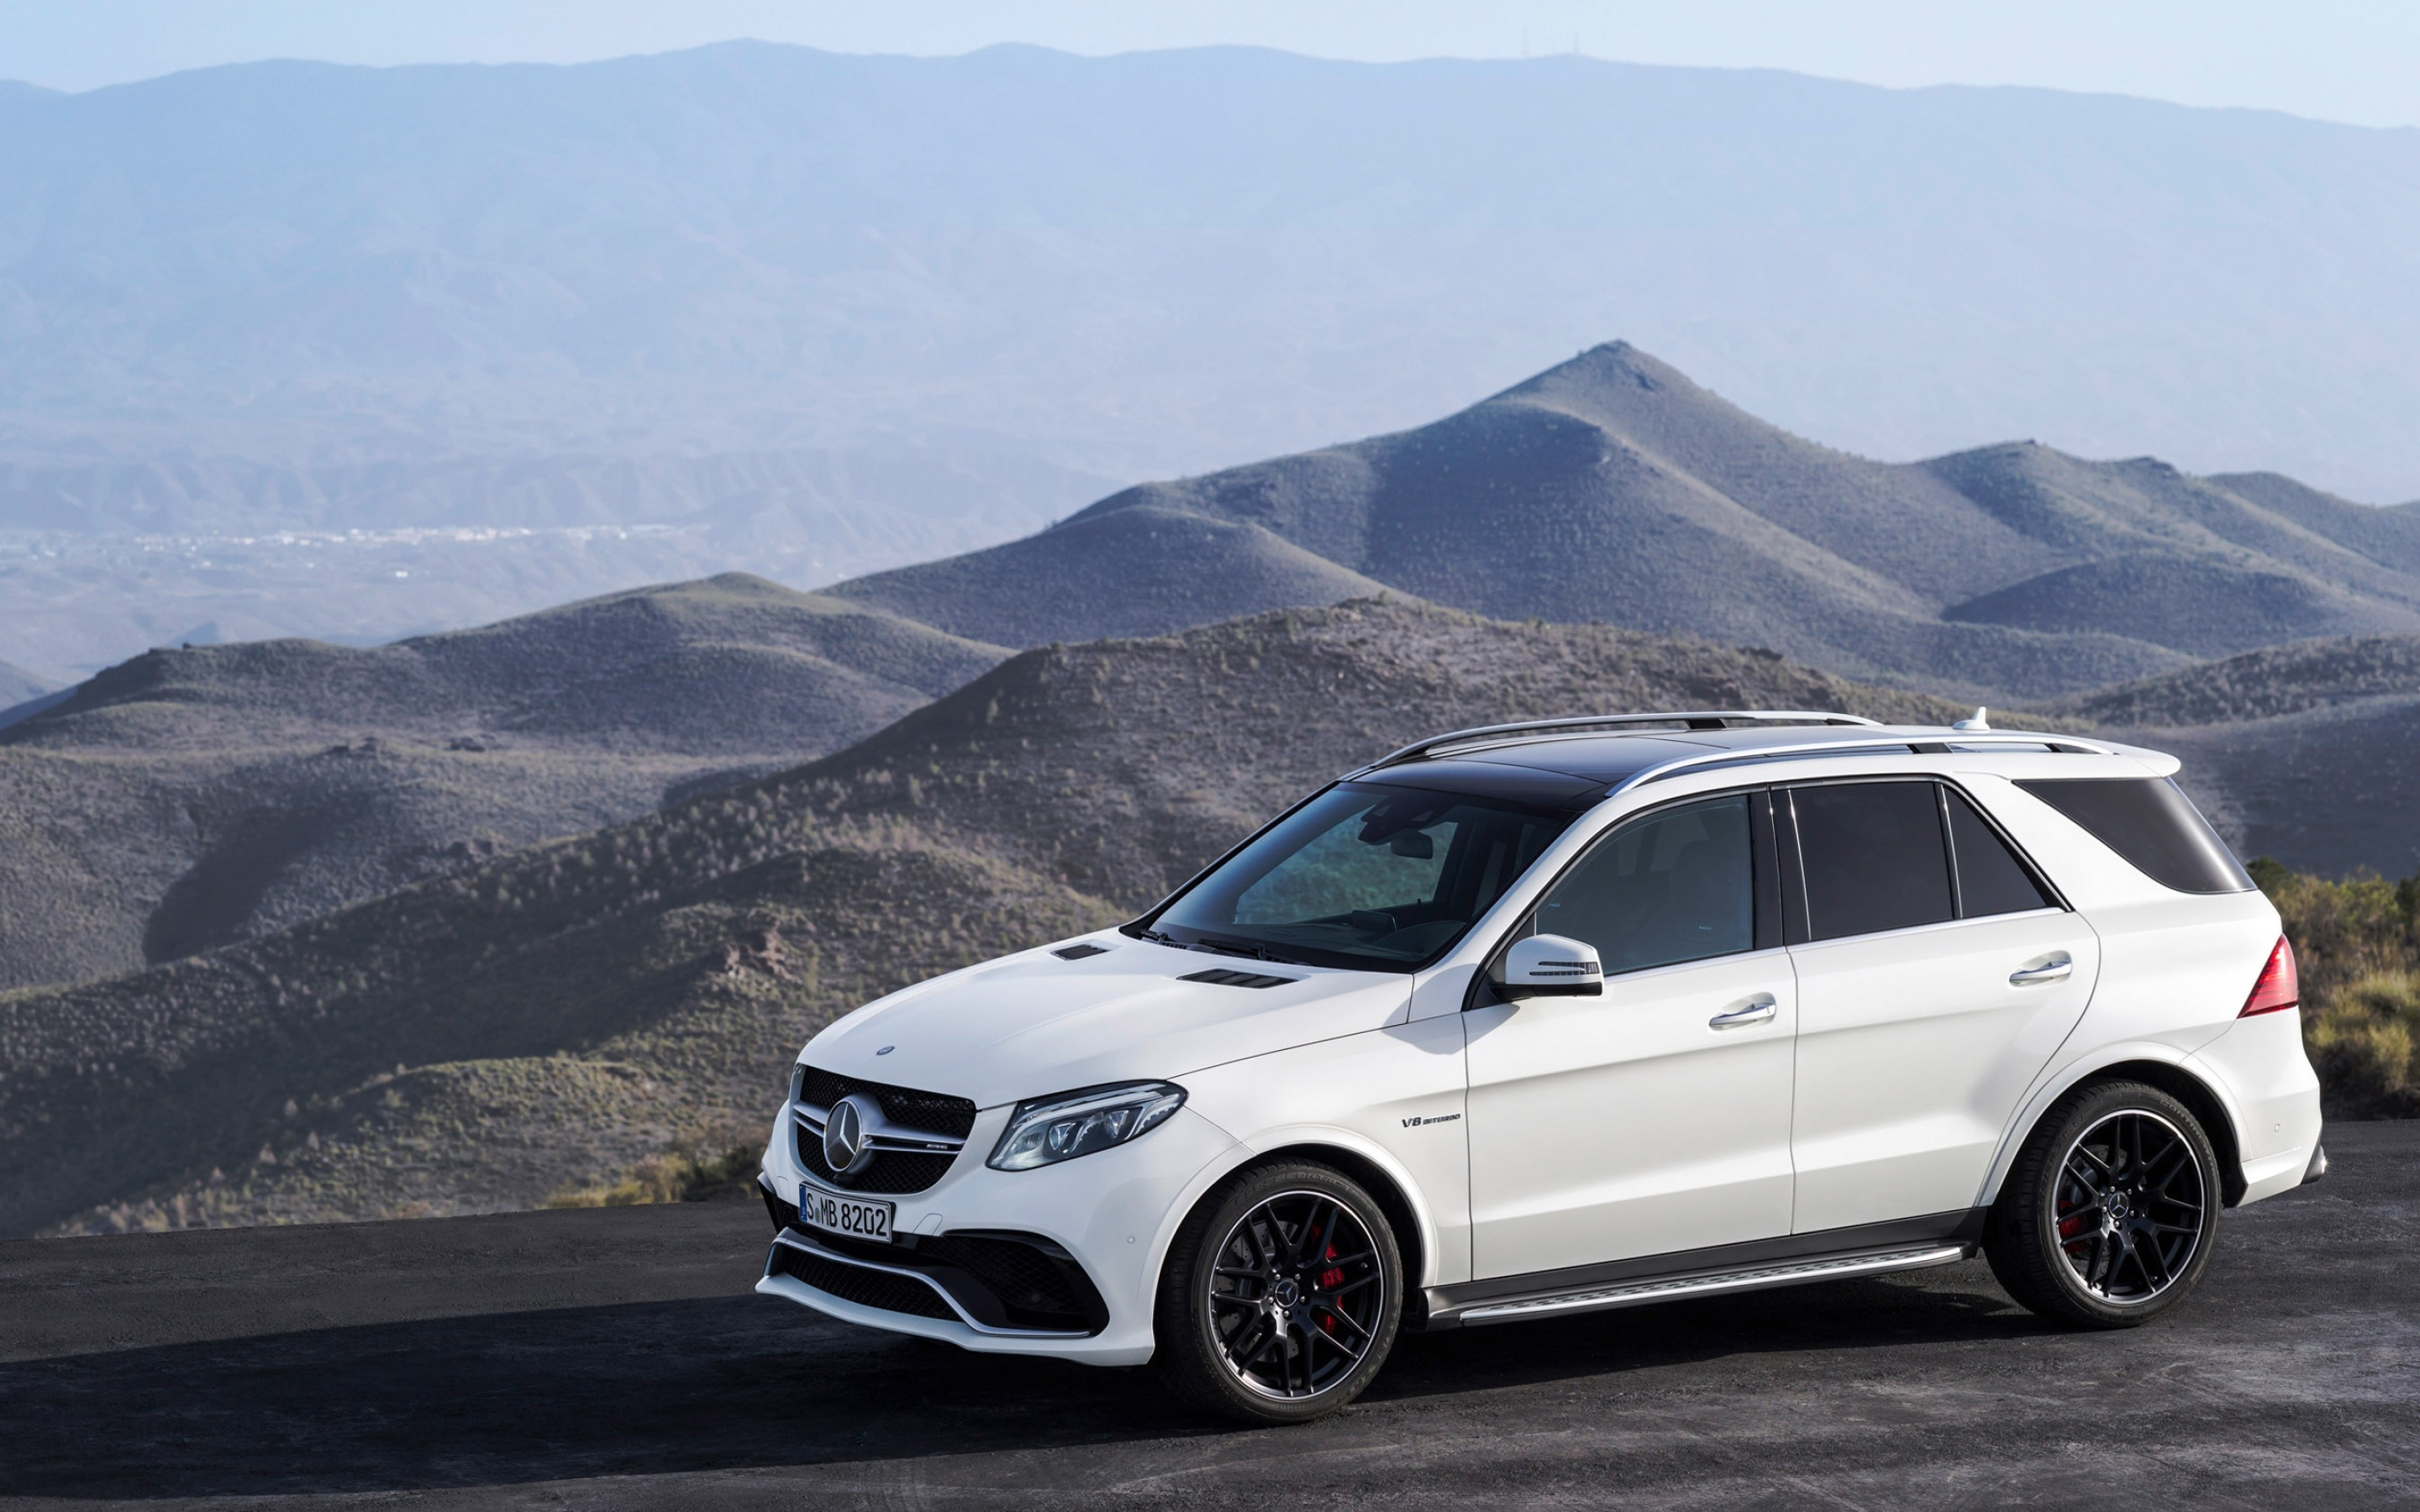 Mercedes-Benz GLE, AMG performance, Car wallpaper better, Eye-catching design, 2880x1800 HD Desktop